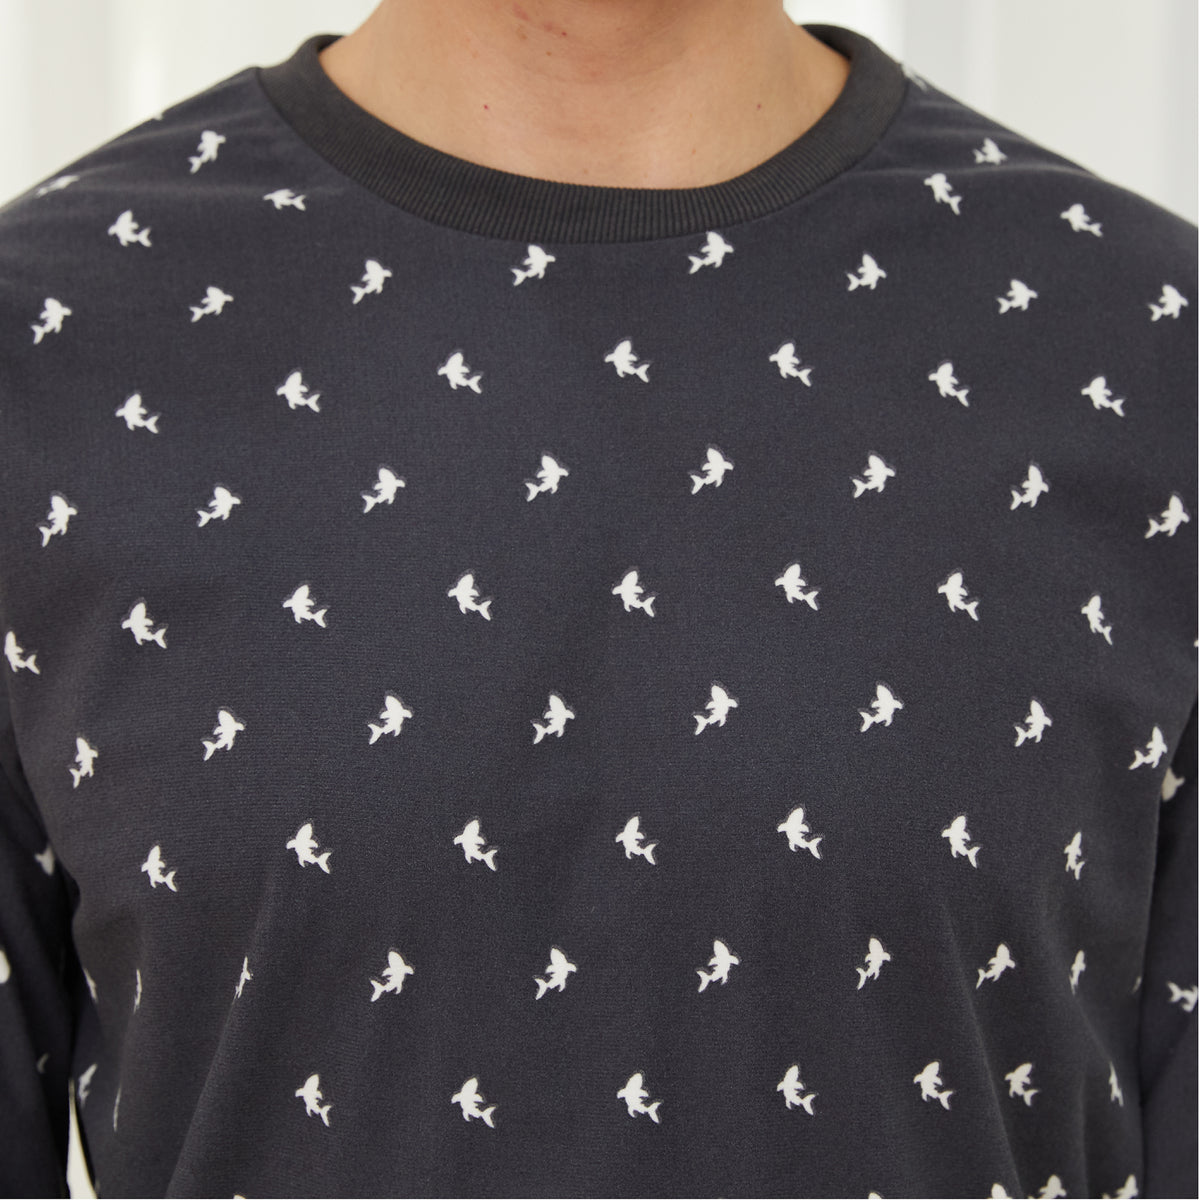 Mens LS Pyjamas Set Shark Print